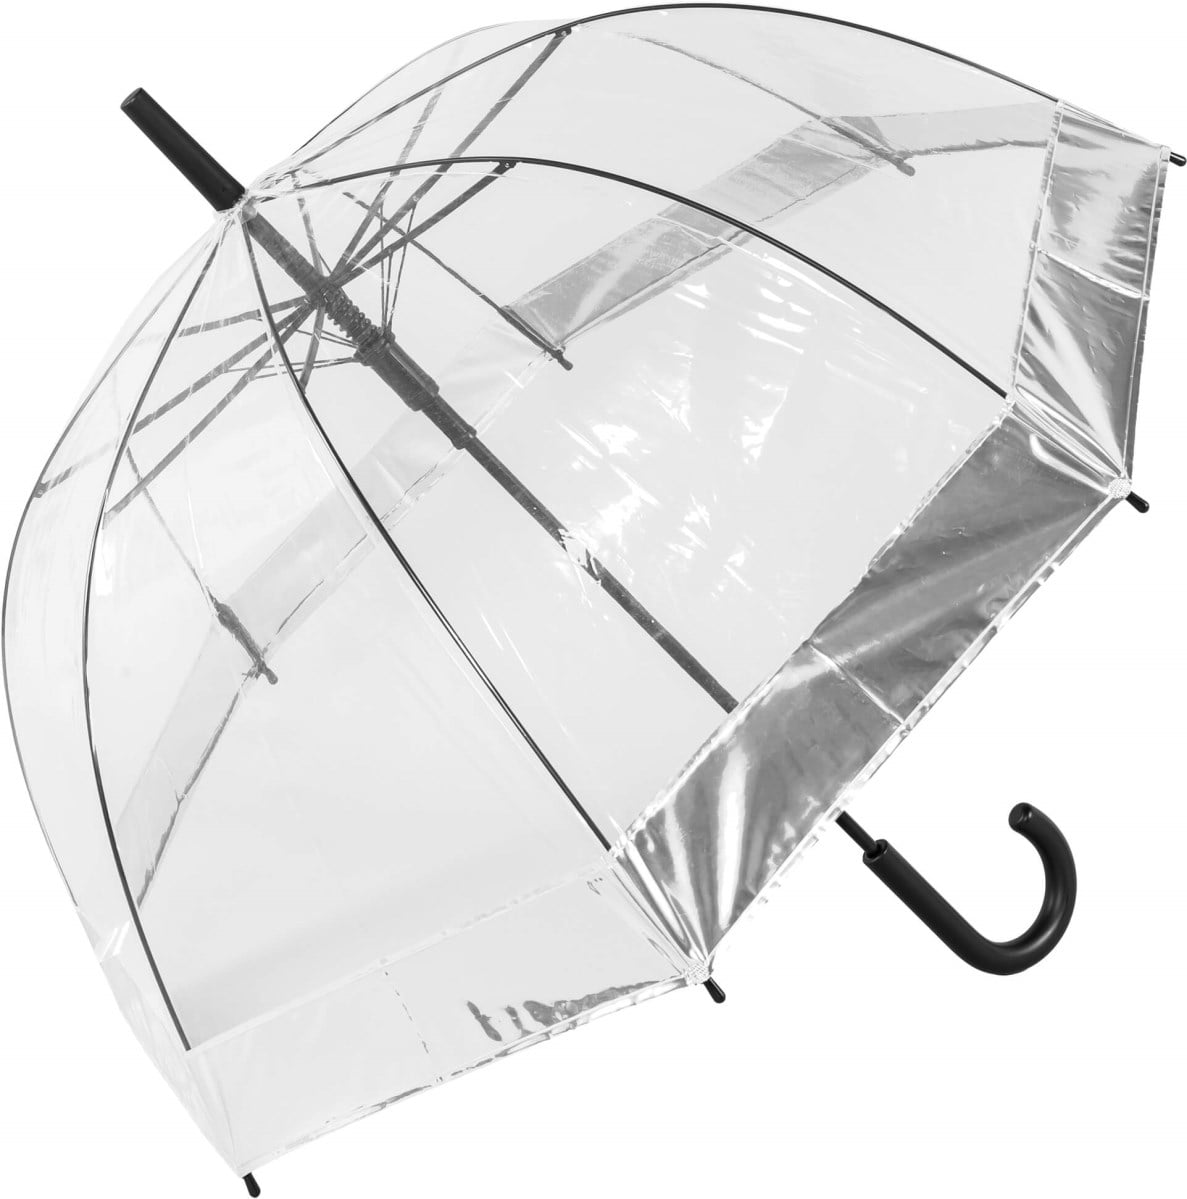 Silver Border Clear Dome Umbrella - open